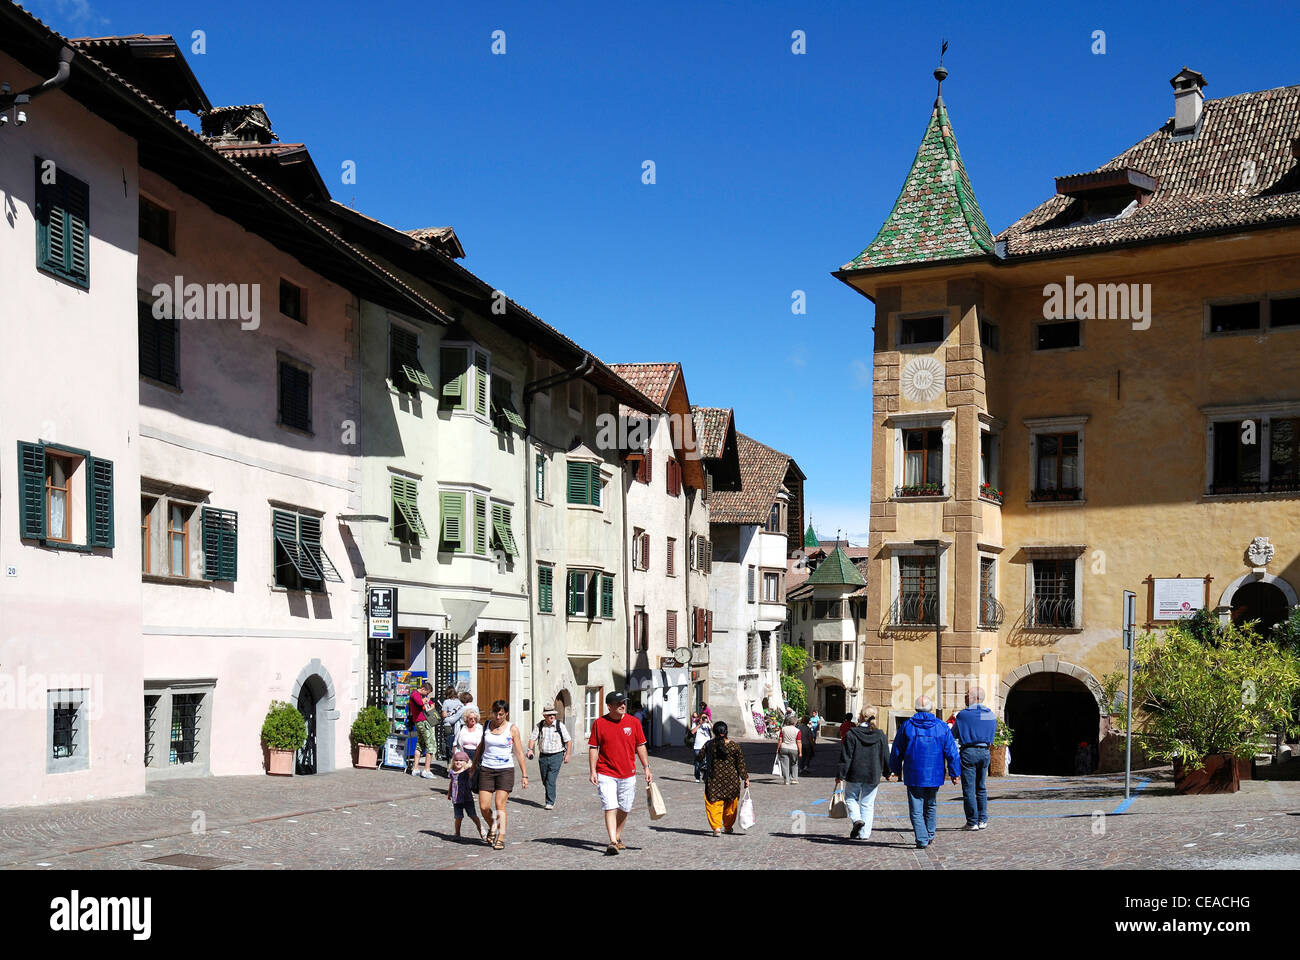 Le centre-ville de Caldaro sur la route des vins du Tyrol du Sud avec des maisons du 17ème siècle. Banque D'Images